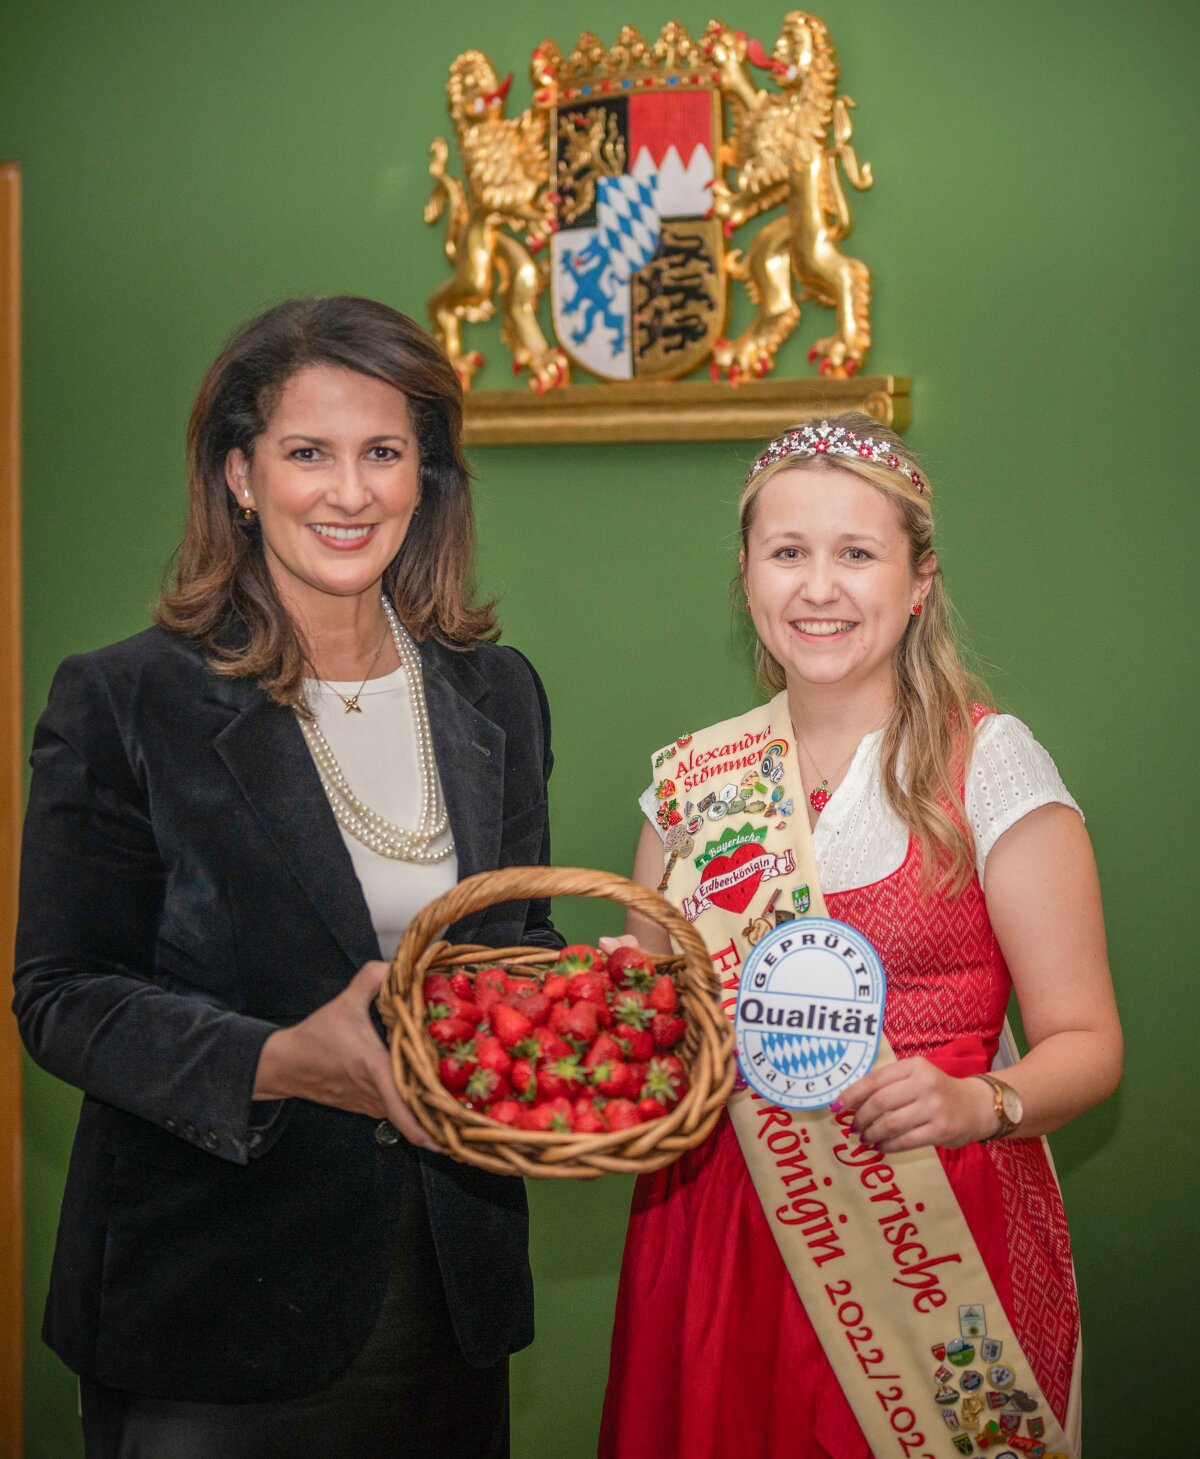 Ministerin Kaniber hält einen Korb mit Erdbeeren. Neben ihr steht die 1. Bayerische Erdbeerkönigin Alexandra Stömmer